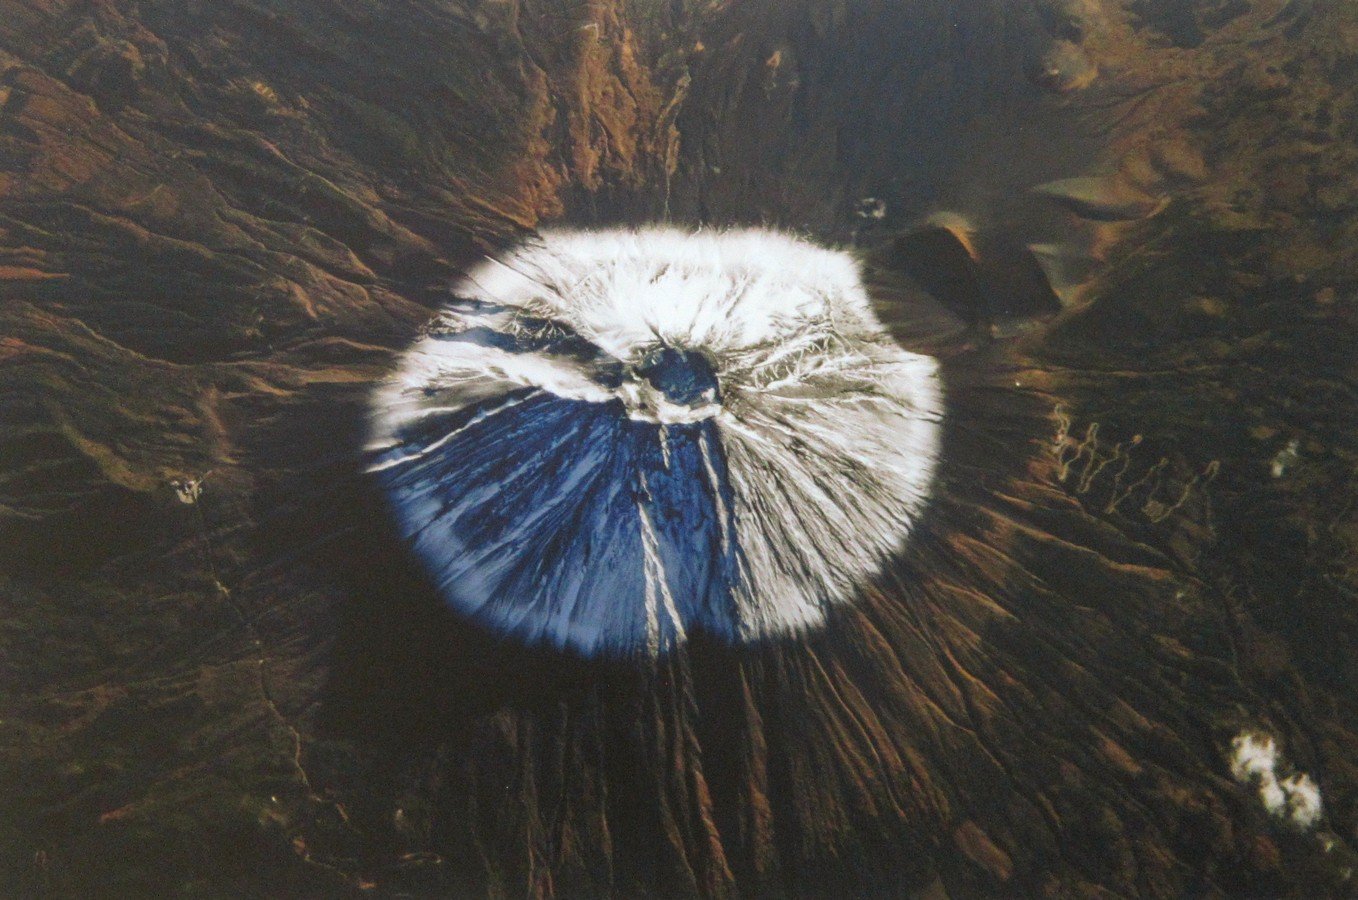 фото сергея рязанского из космоса